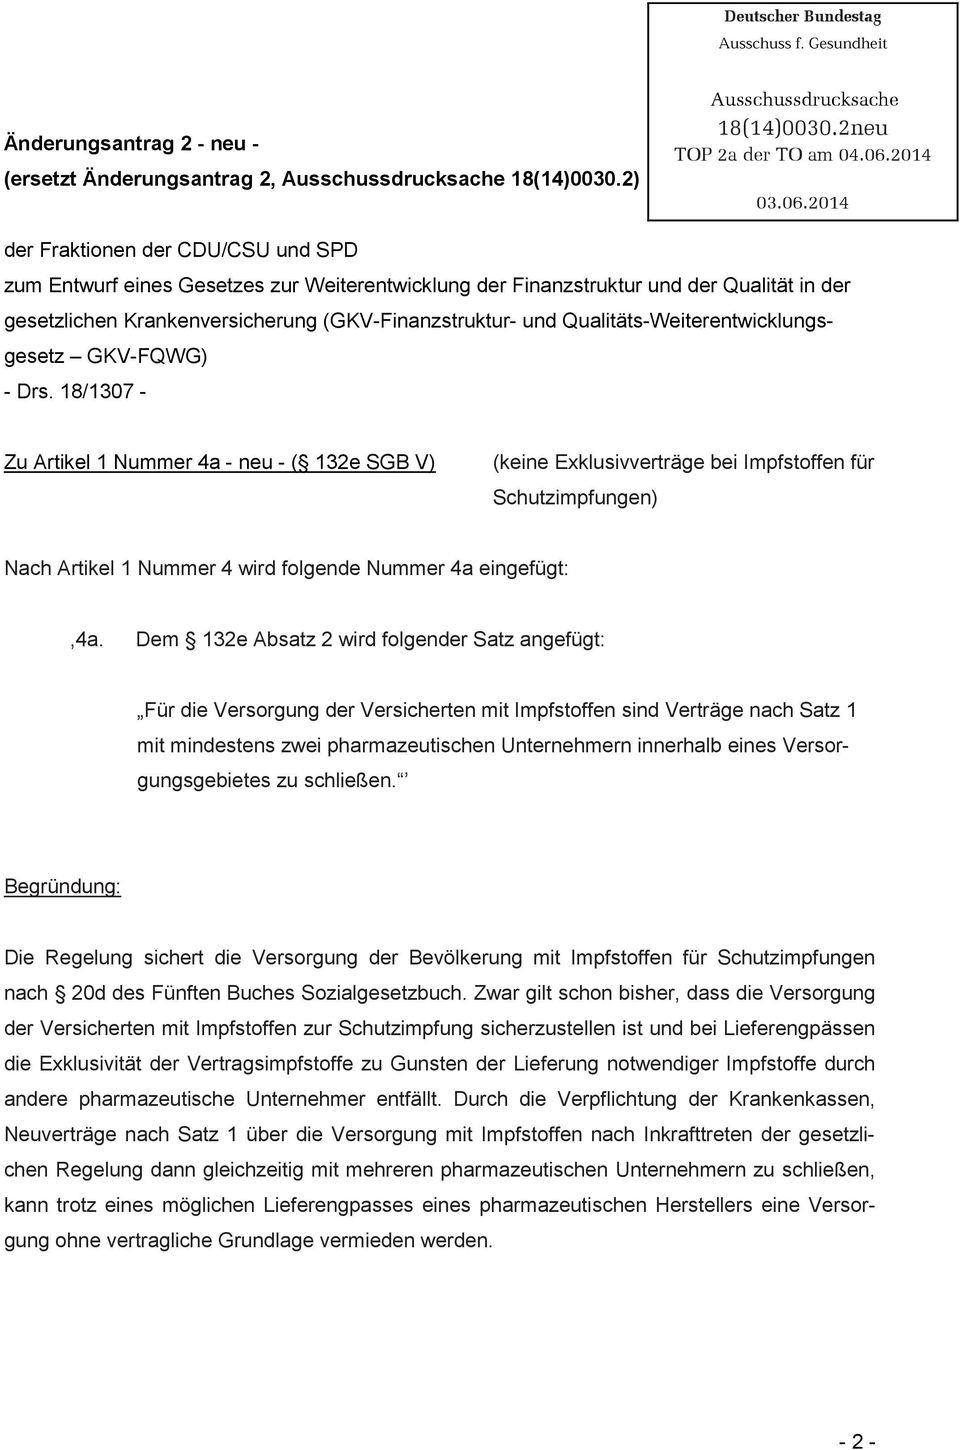 2014 der Fraktionen der CDU/CSU und SPD zum Entwurf eines Gesetzes zur Weiterentwicklung der Finanzstruktur und der Qualität in der gesetzlichen Krankenversicherung(GKV-Finanzstruktur- und